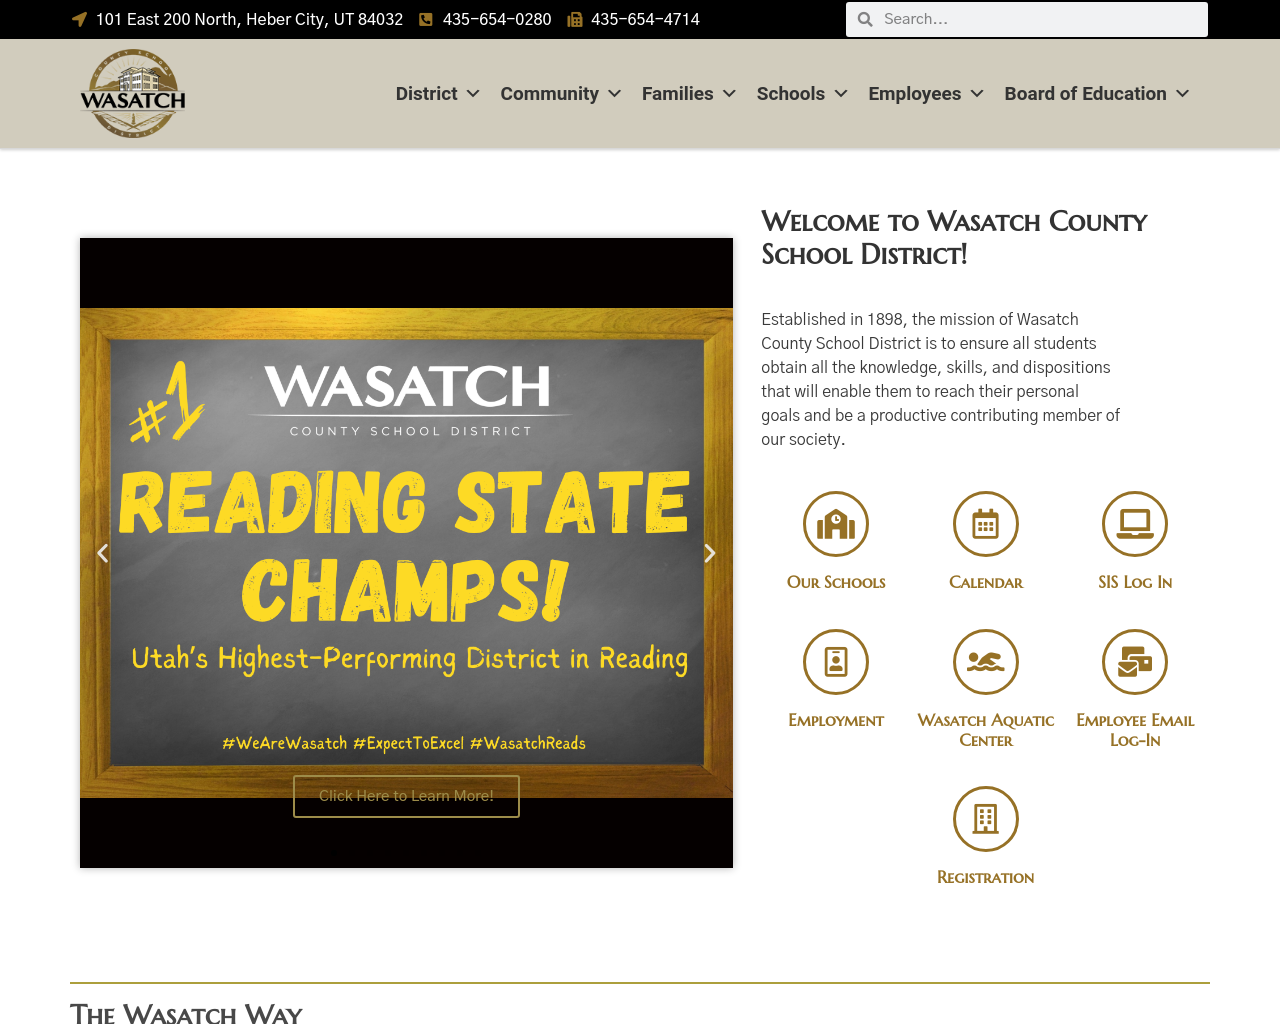 wasatch.edu